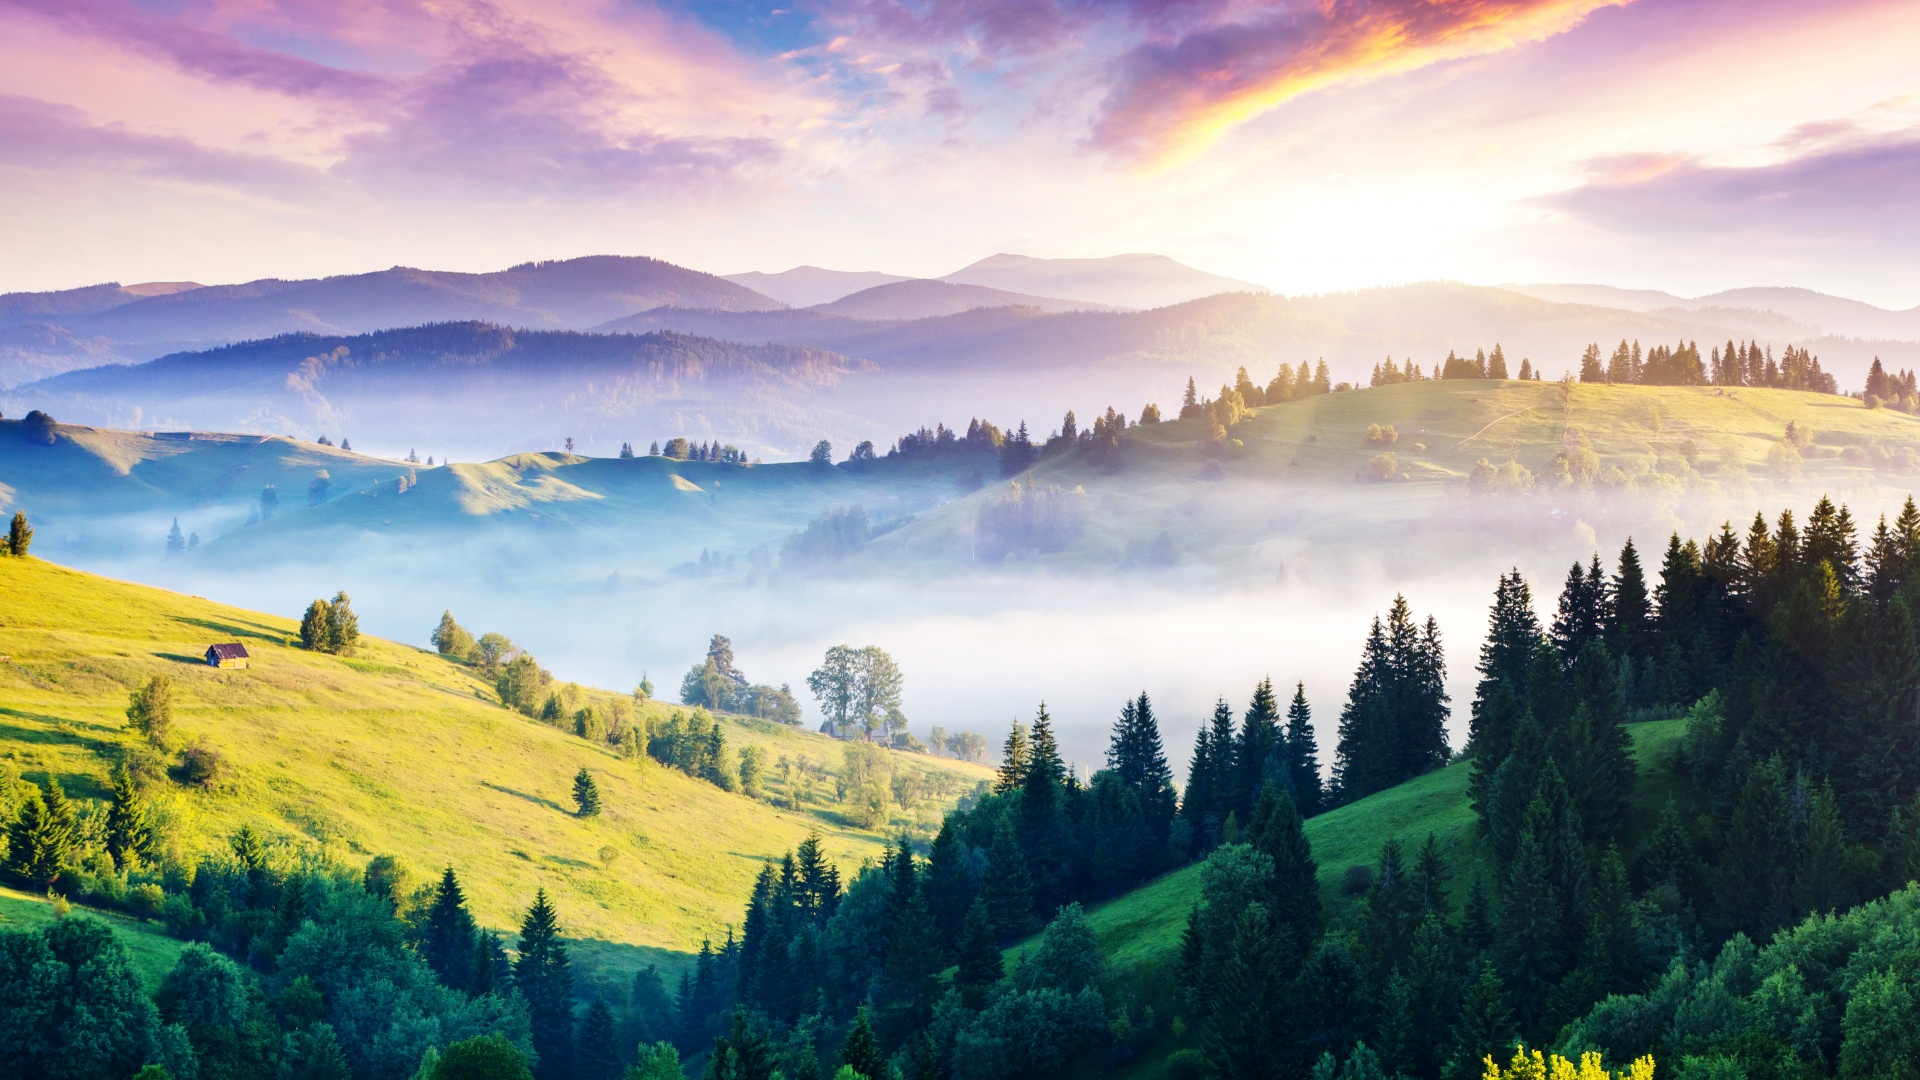 乌克兰全景,山,雾,小屋,丘陵,太阳,自然森林风景桌面壁纸